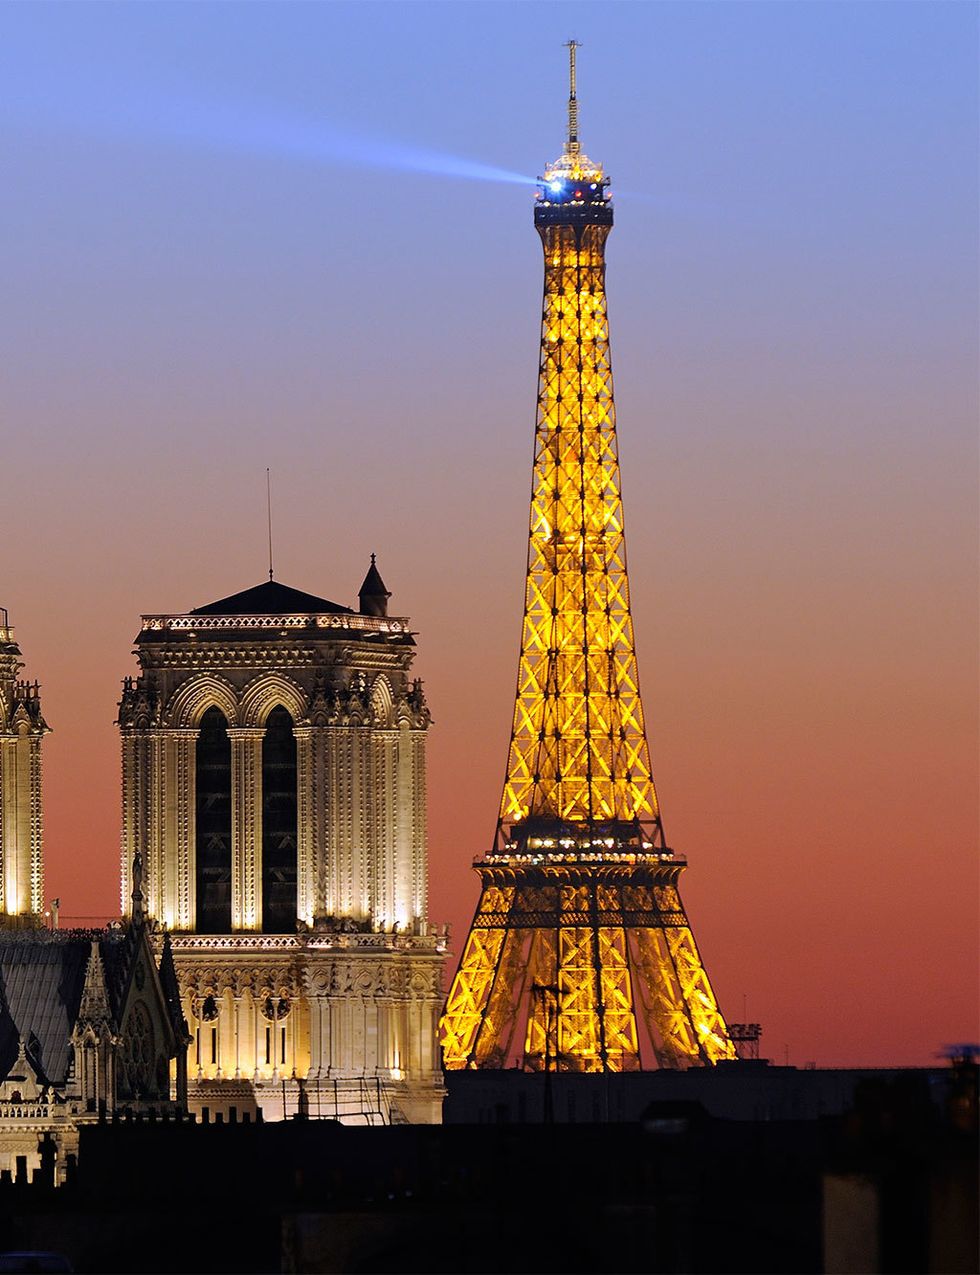 <p>Todas las noches 20.000 bombillas se encienden durante 5 minutos cada hora. La torre adopta un precioso color dorado que la hace brillar más que nunca en la ciudad del amor.</p>